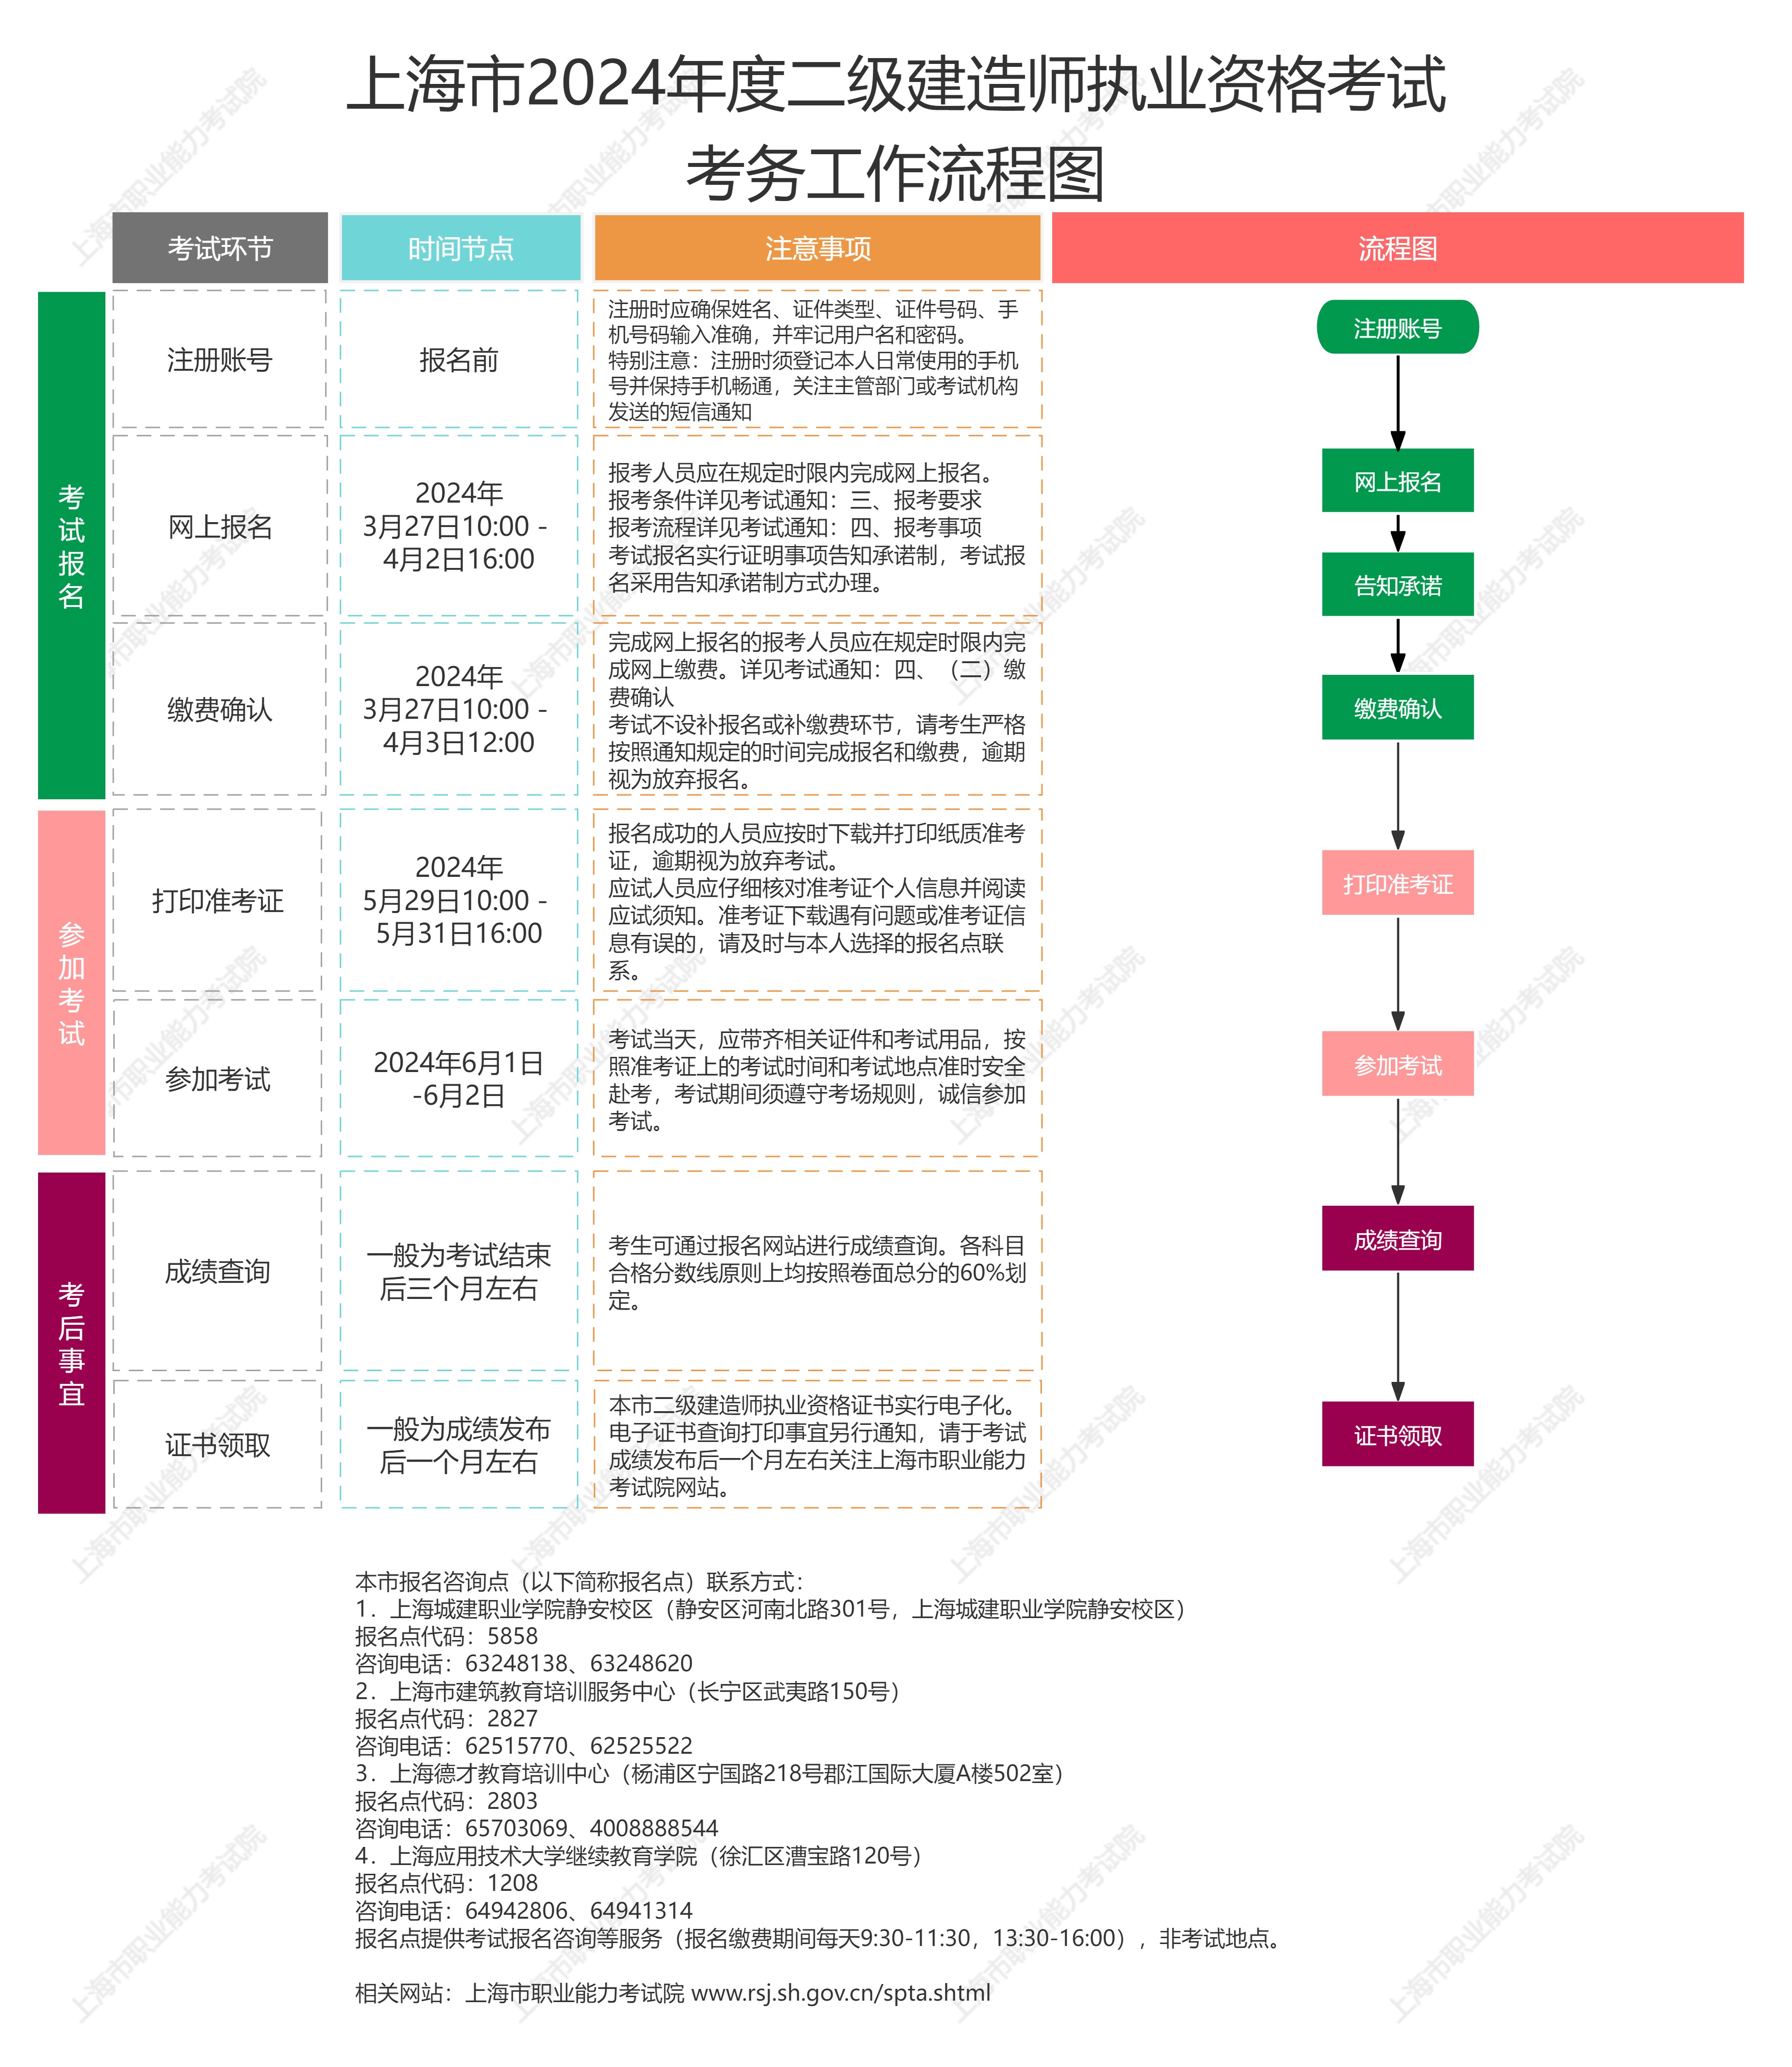 上海2024年二级建造师考试工作有关事项的通知